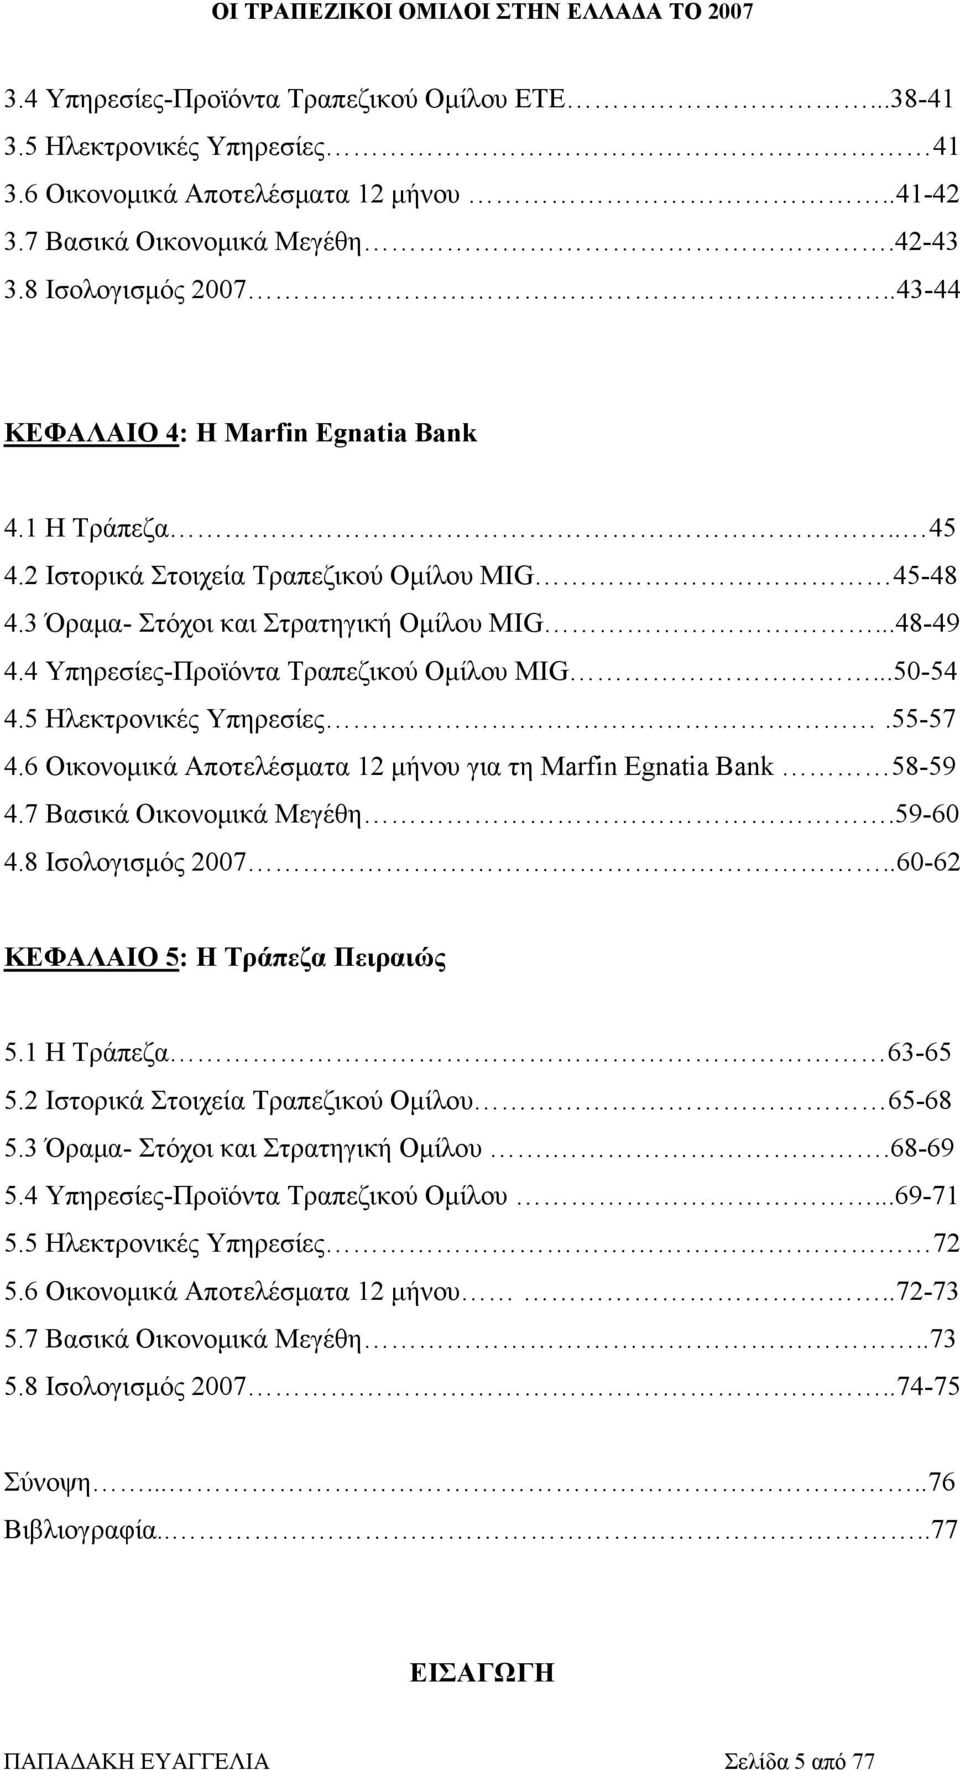 4 Υπηρεσίες-Προϊόντα Τραπεζικού Ομίλου MIG...50-54 4.5 Ηλεκτρονικές Υπηρεσίες.55-57 4.6 Οικονομικά Αποτελέσματα 12 μήνου για τη Marfin Egnatia Bank 58-59 4.7 Βασικά Οικονομικά Μεγέθη.59-60 4.